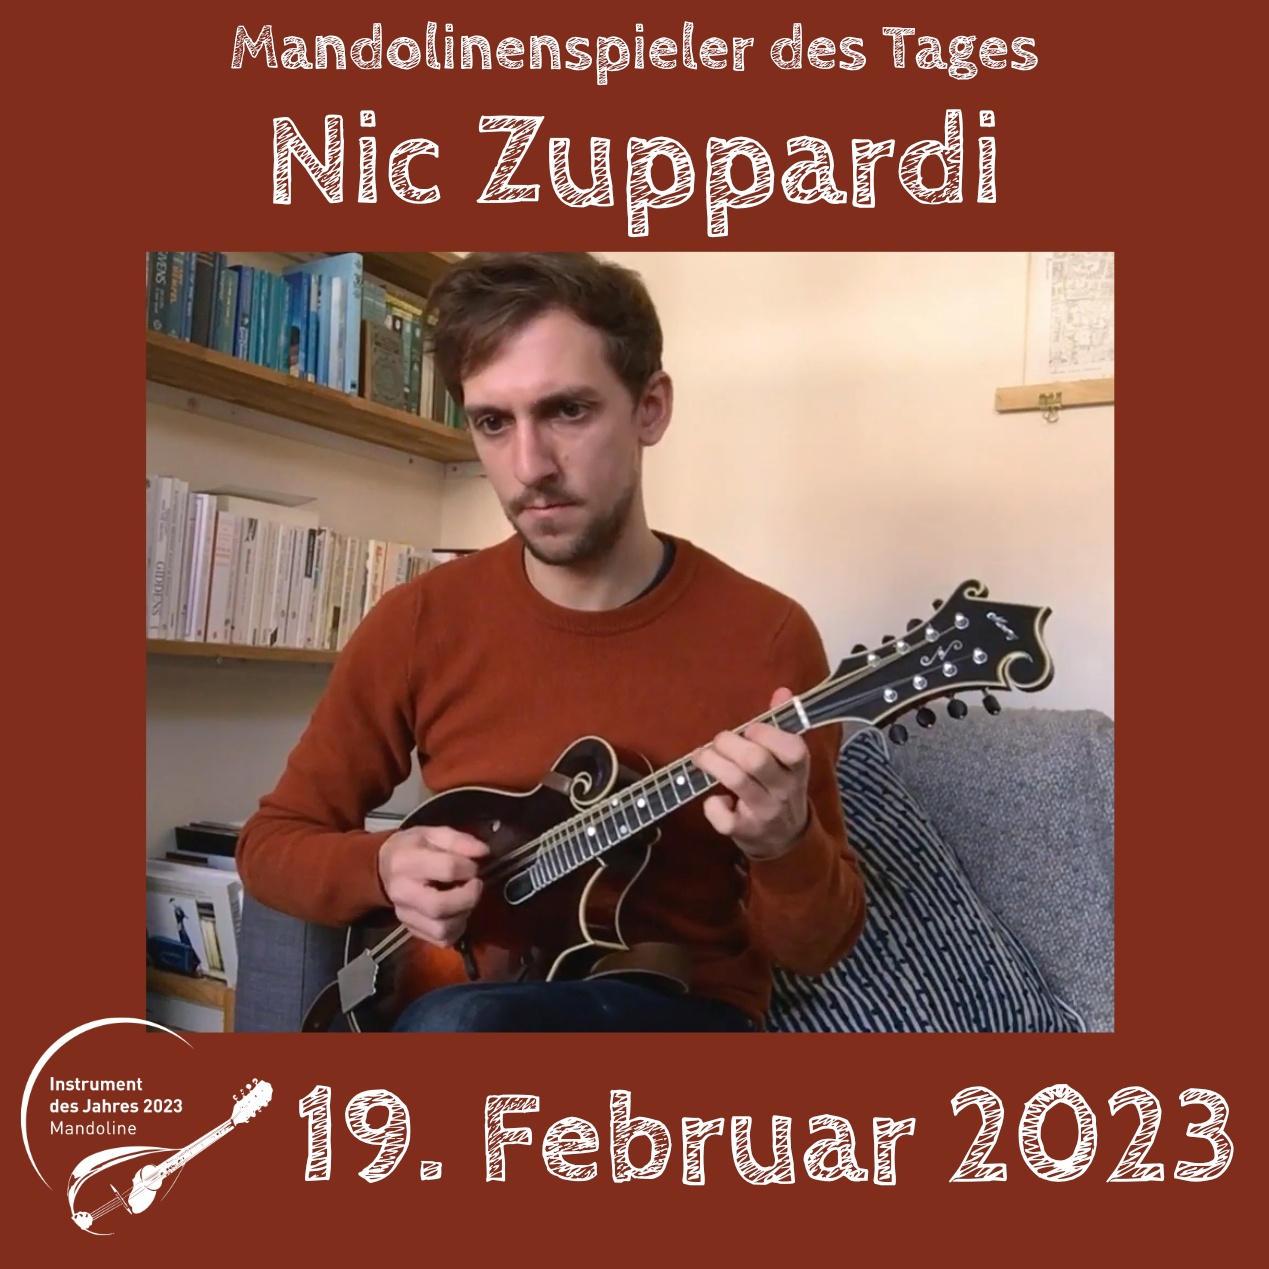 Nic Zuppardi Mandoline Instrument des Jahres 2023 Mandolinenspieler des Tages